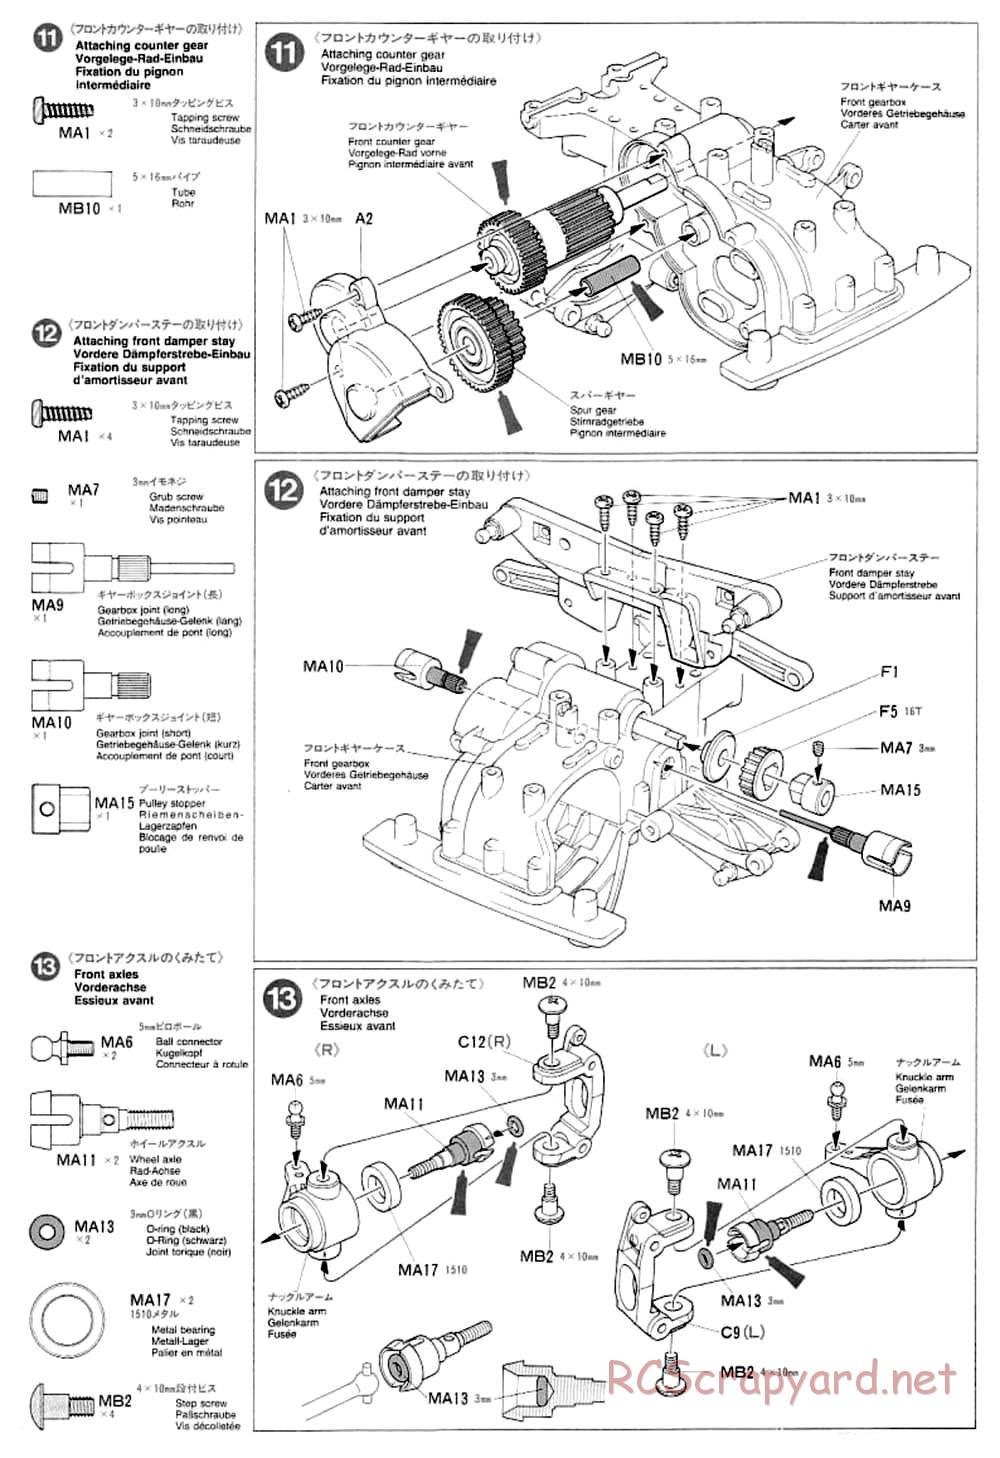 Tamiya - TA-03F Chassis - Manual - Page 8